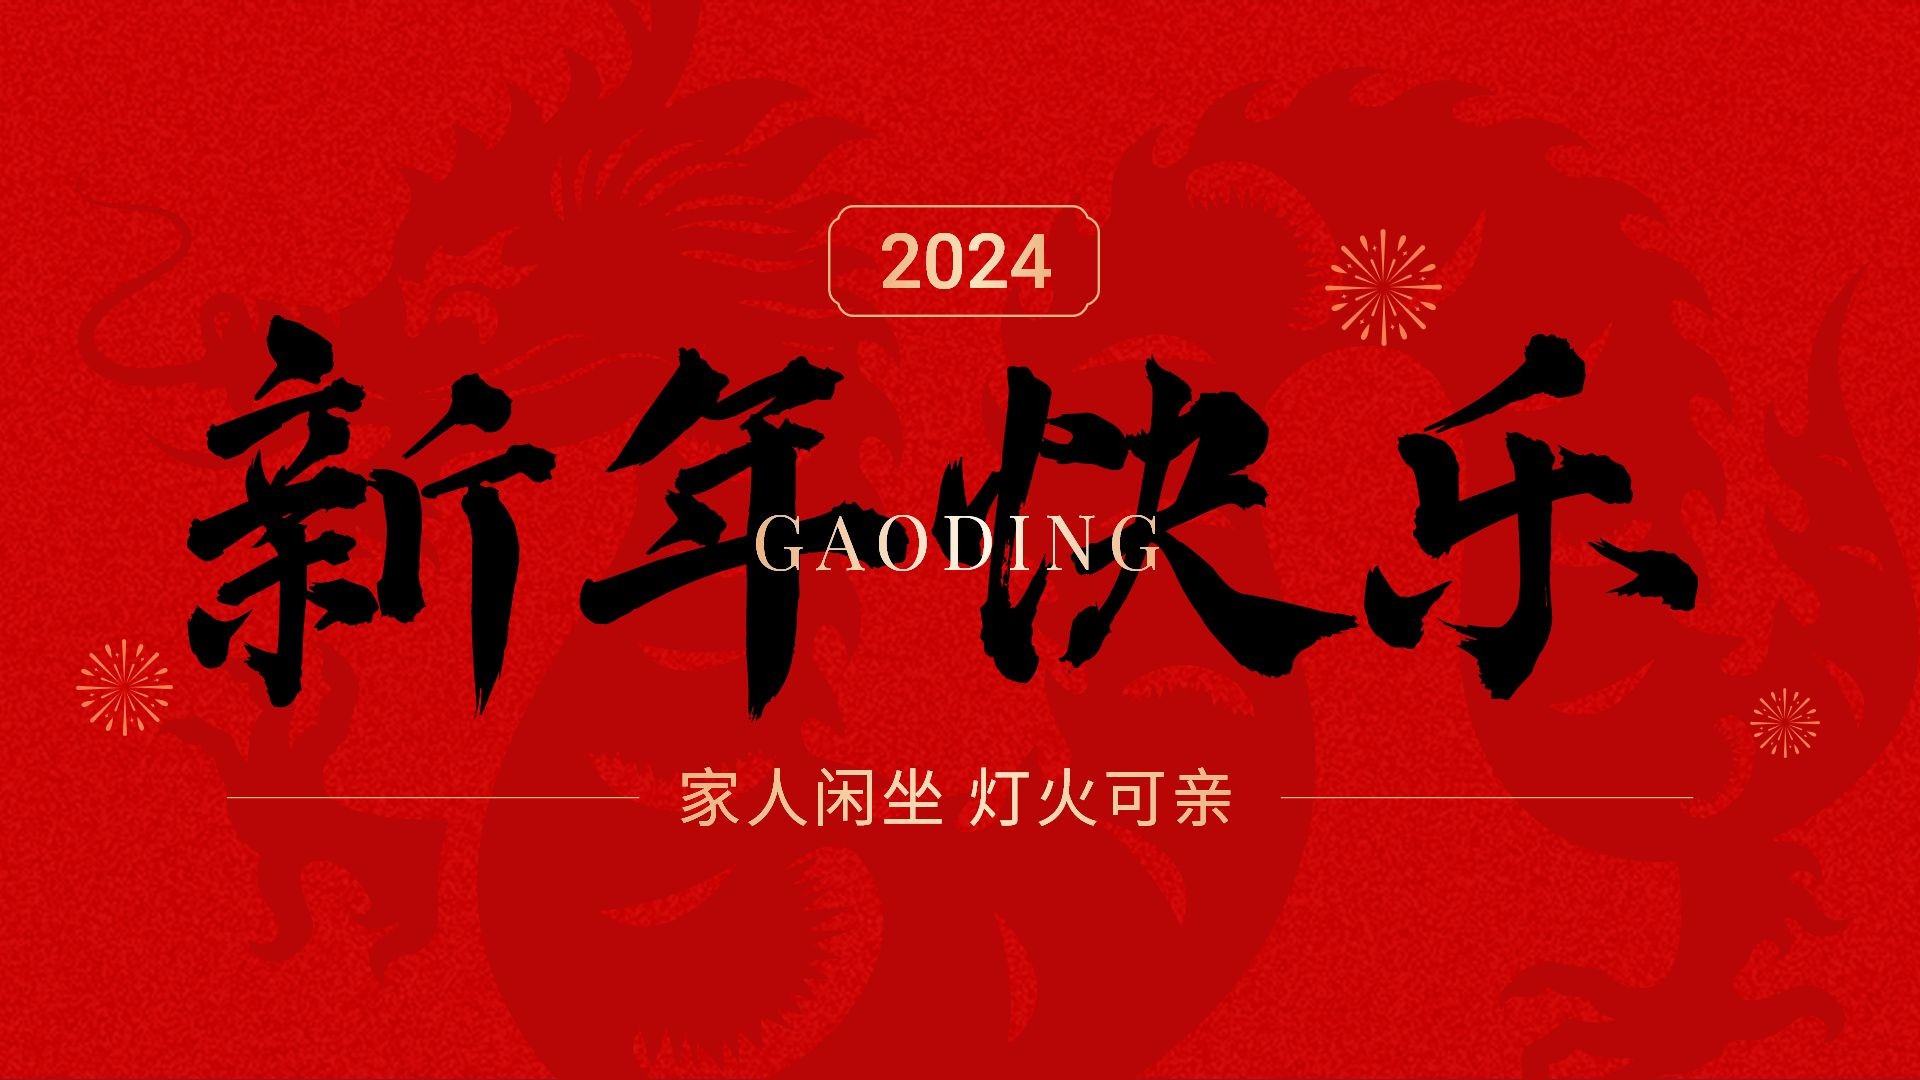 春节新年节日祝福小绿书套装公众号首图16:9头图图片封面